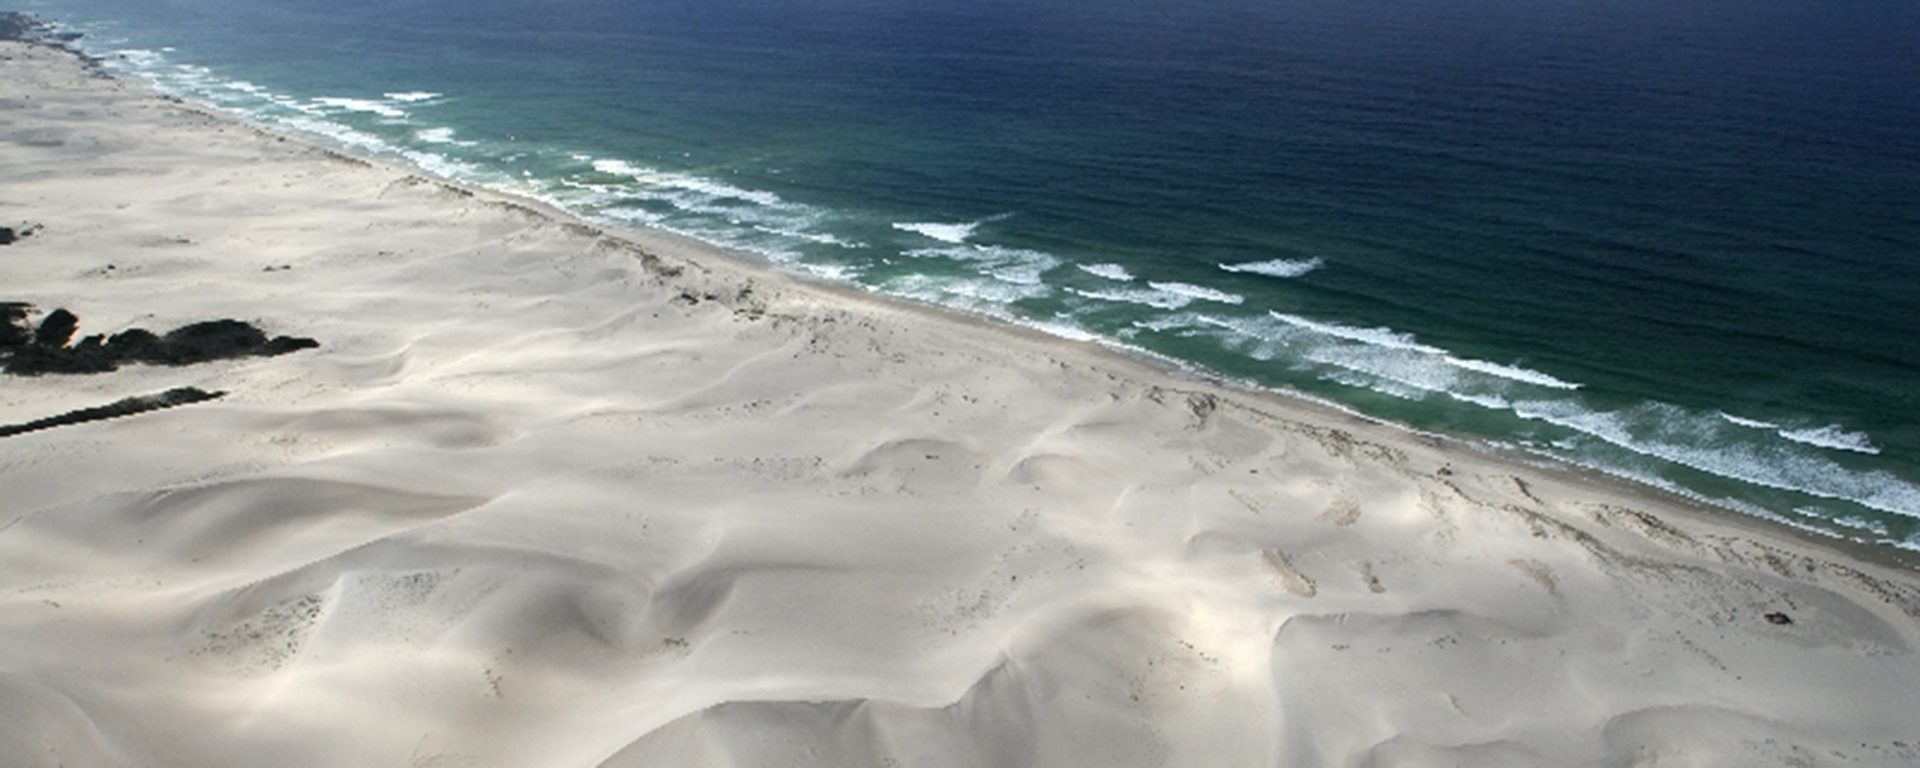 sand-dunes-deep-sea_de-hoop